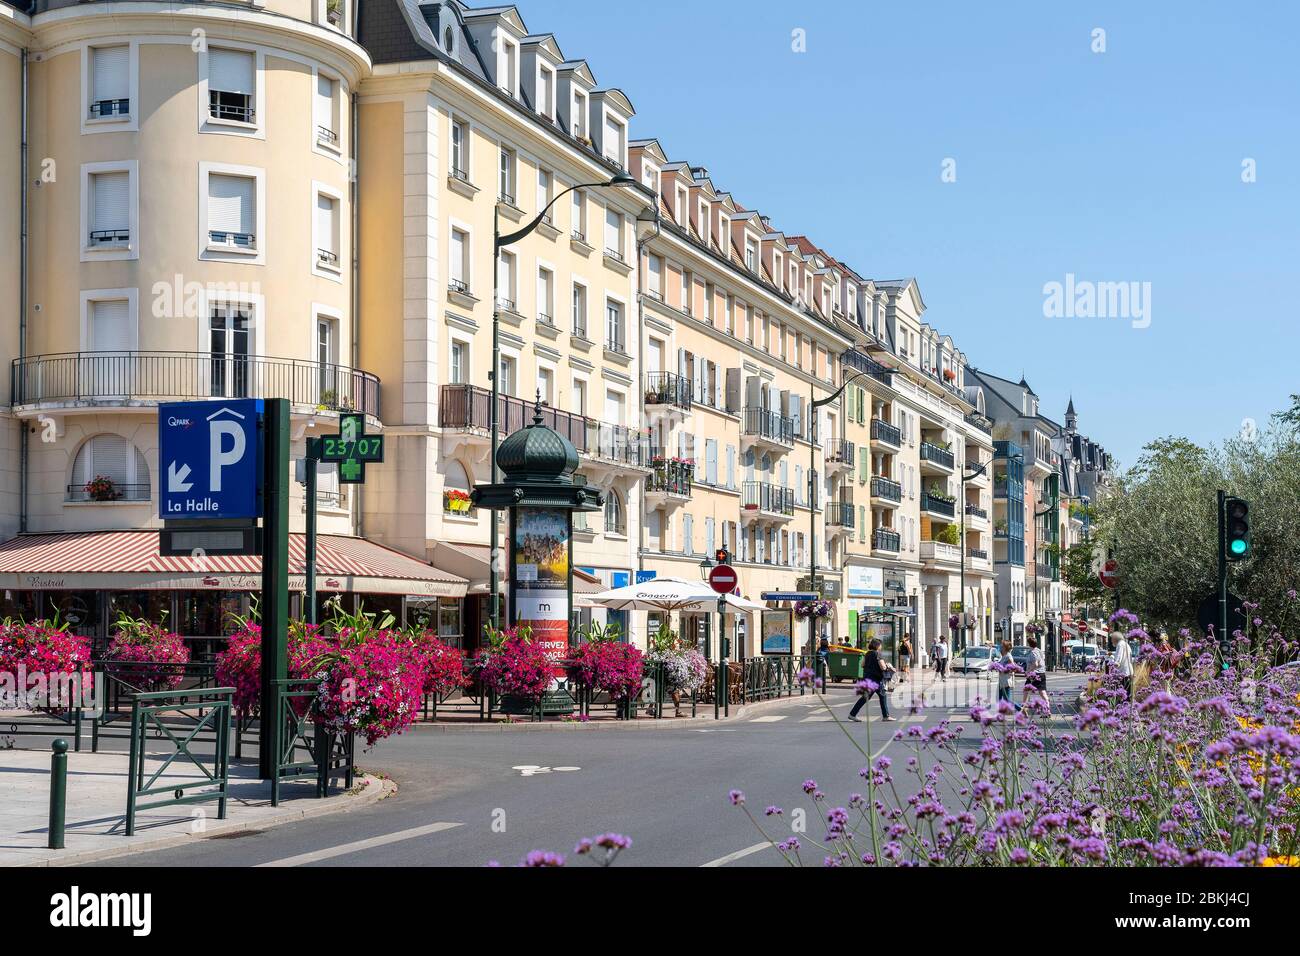 France, Hauts de Seine, Le Plessis-Robinson, Avenue Charles de Gaulle Stock Photo